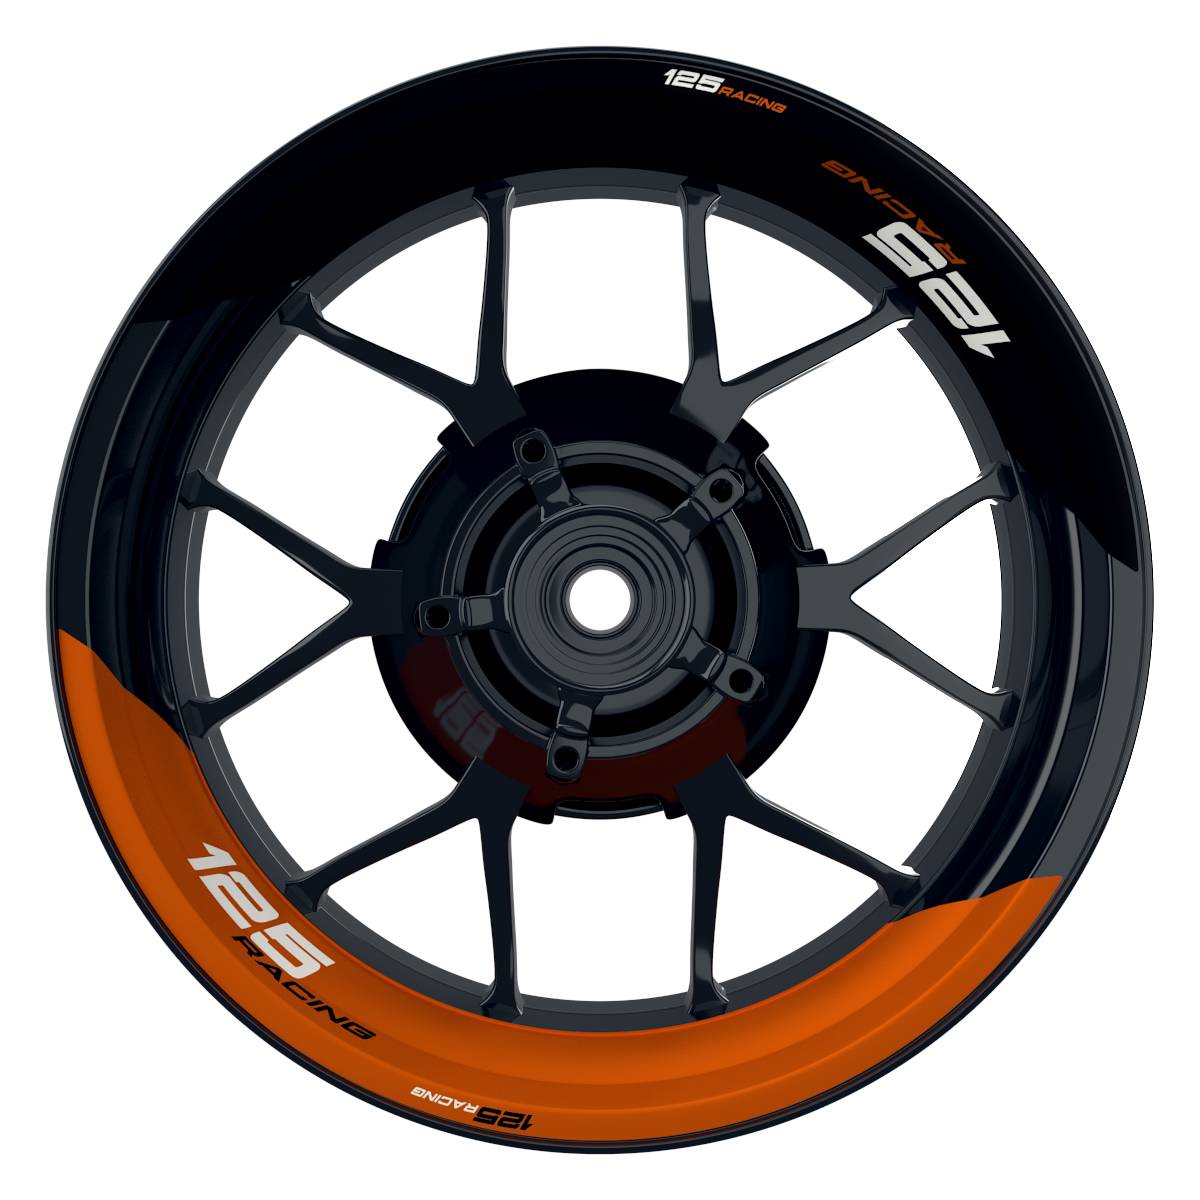 KTM Racing 125 halb halb schwarz orange Frontansicht